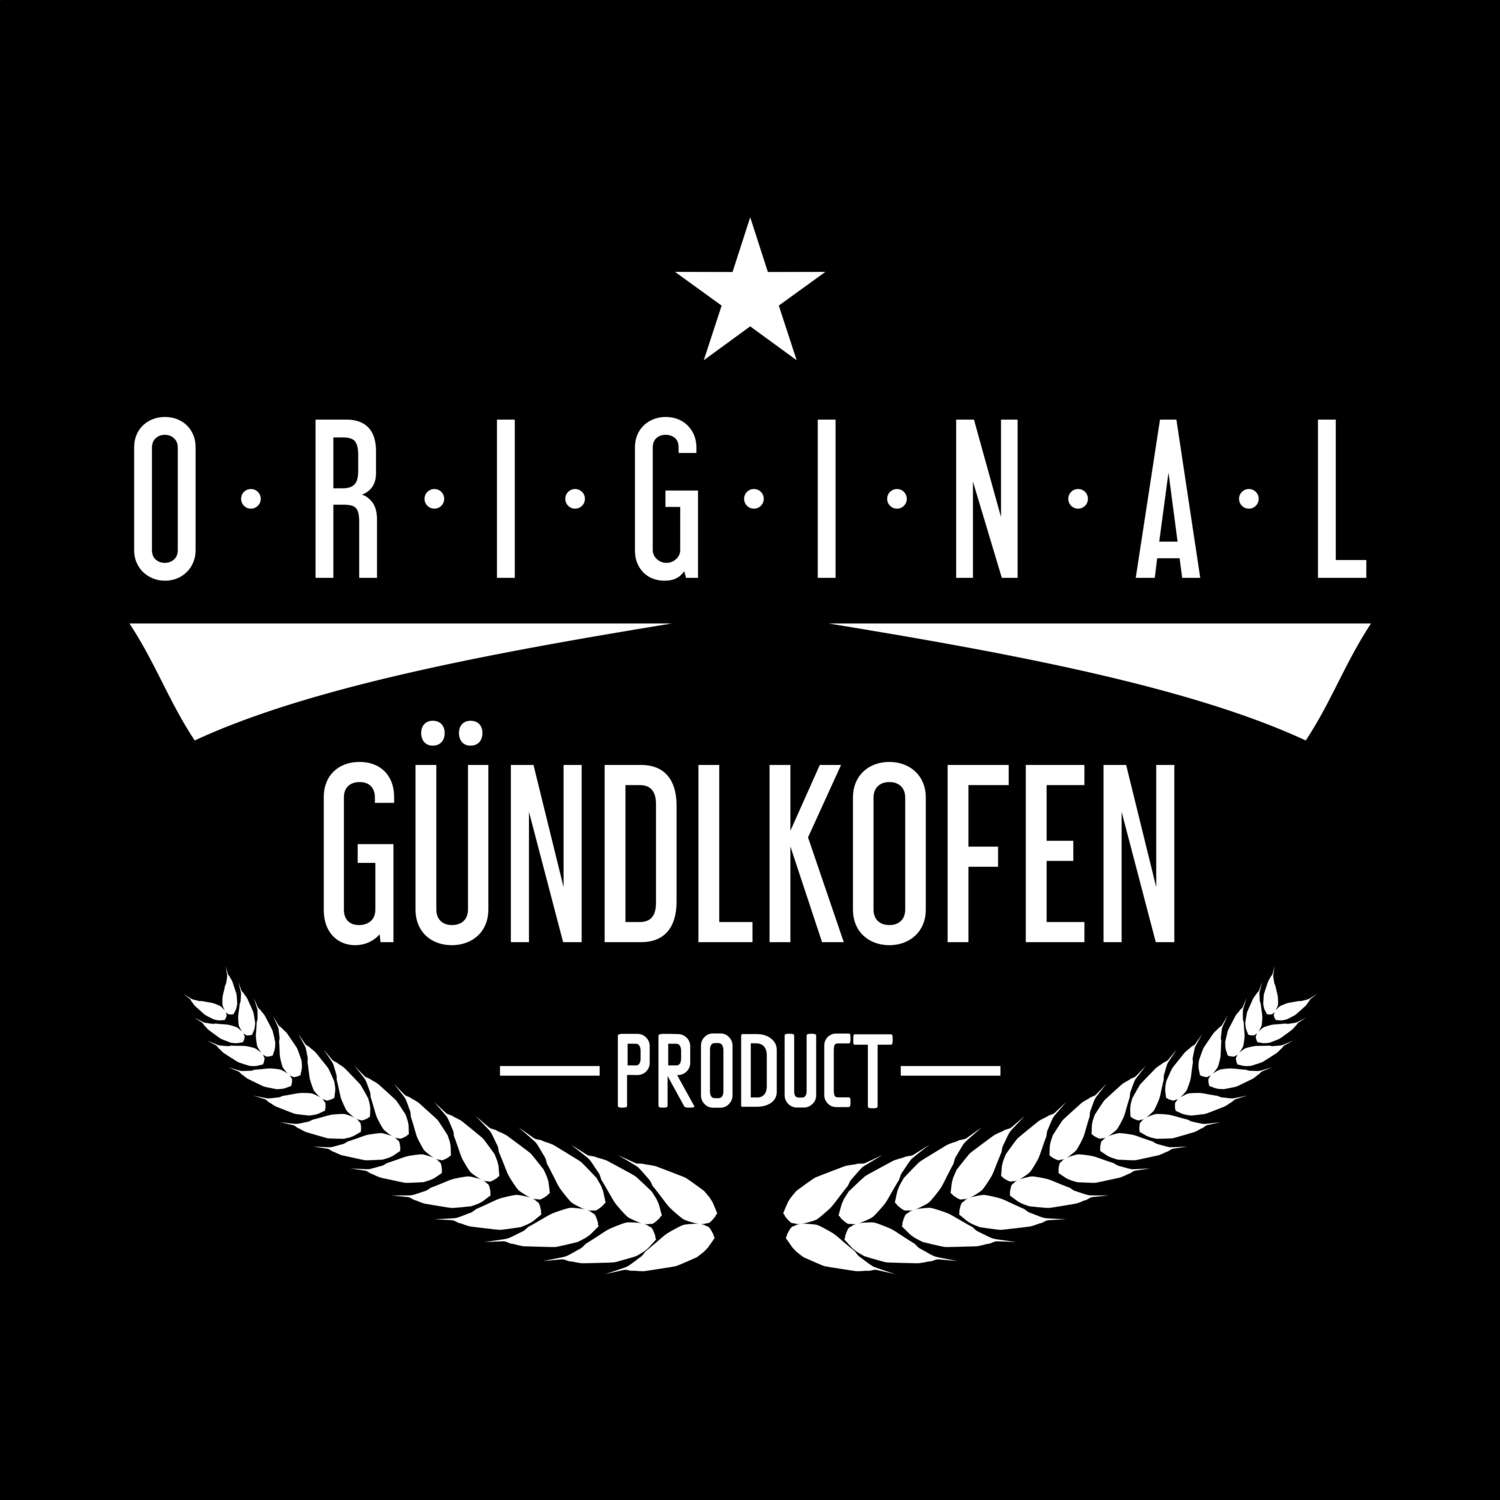 Gündlkofen T-Shirt »Original Product«